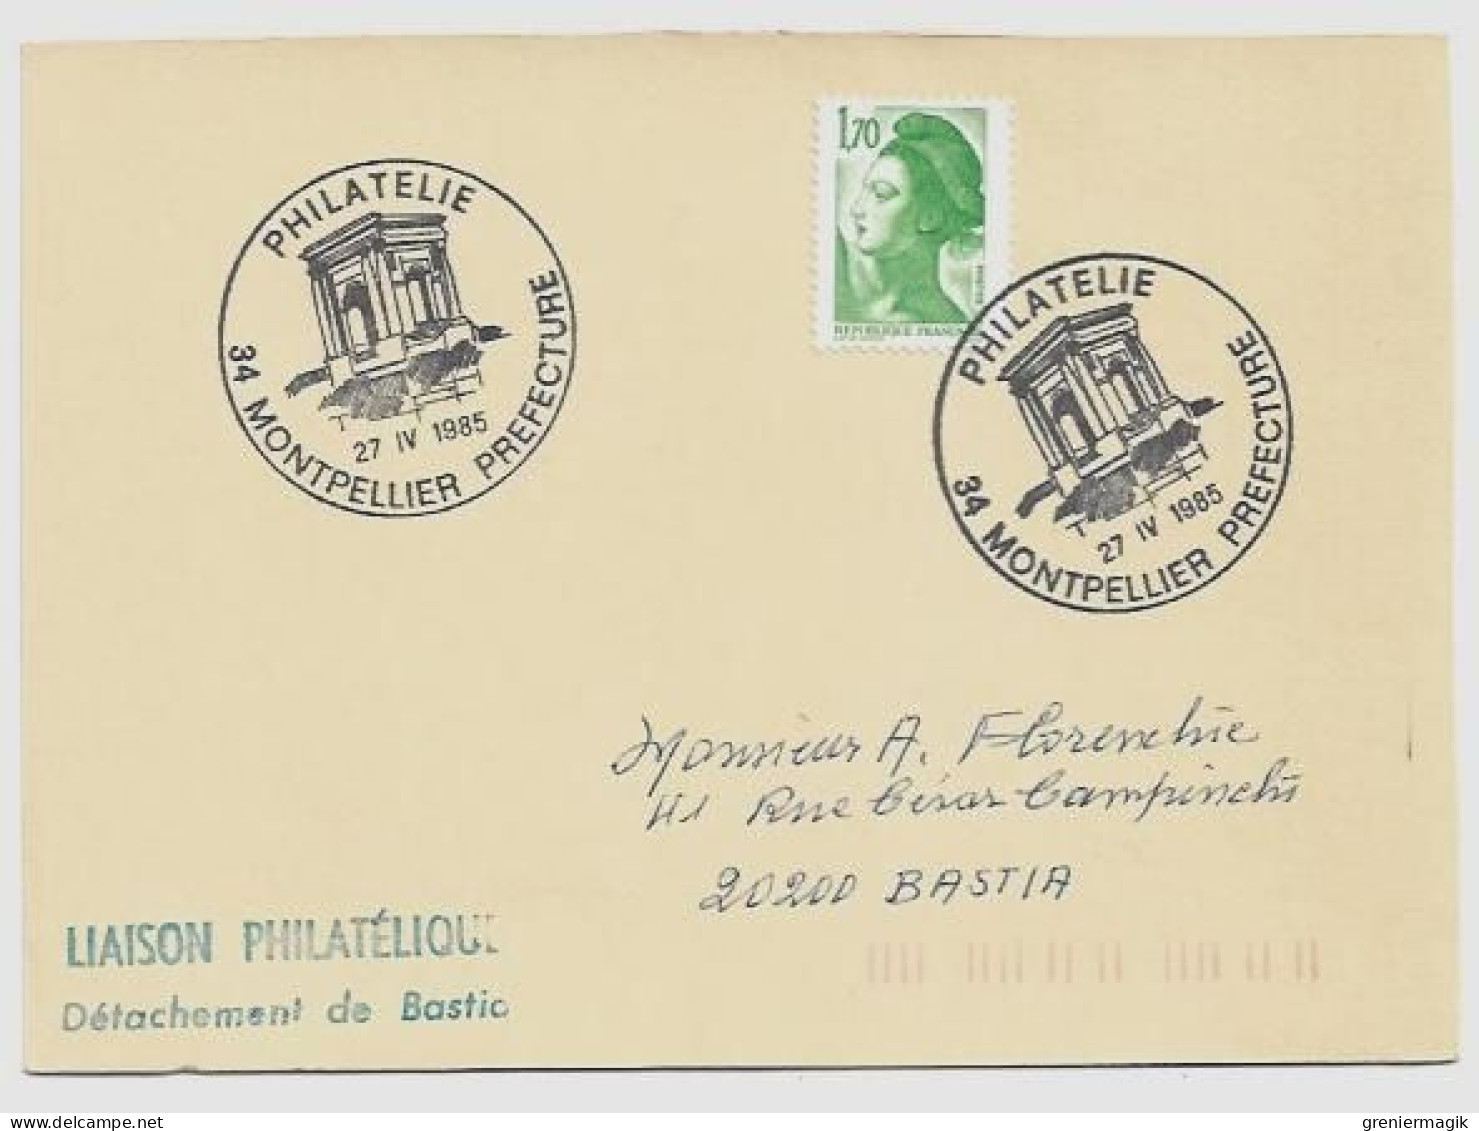 N°2318 Cachet Philatélie Montpellier Préfecture 27 IV 1985 - Liaison Philatélique Bastia - Liberté Gandon 1,70 Vert - Matasellos Provisorios